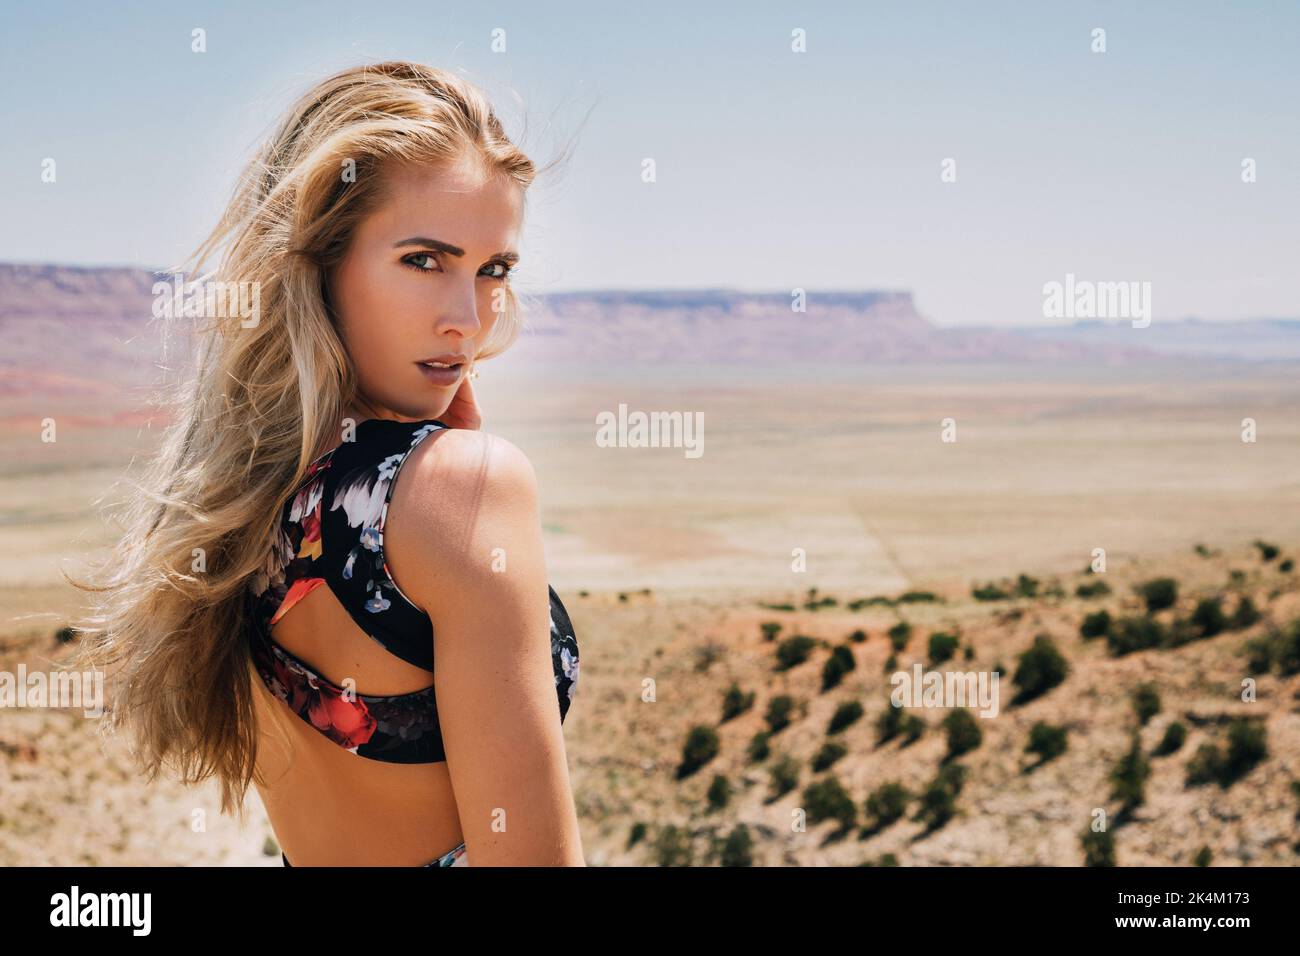 Ritratto di bella donna bionda con capelli lunghi nel paesaggio desertico Foto Stock